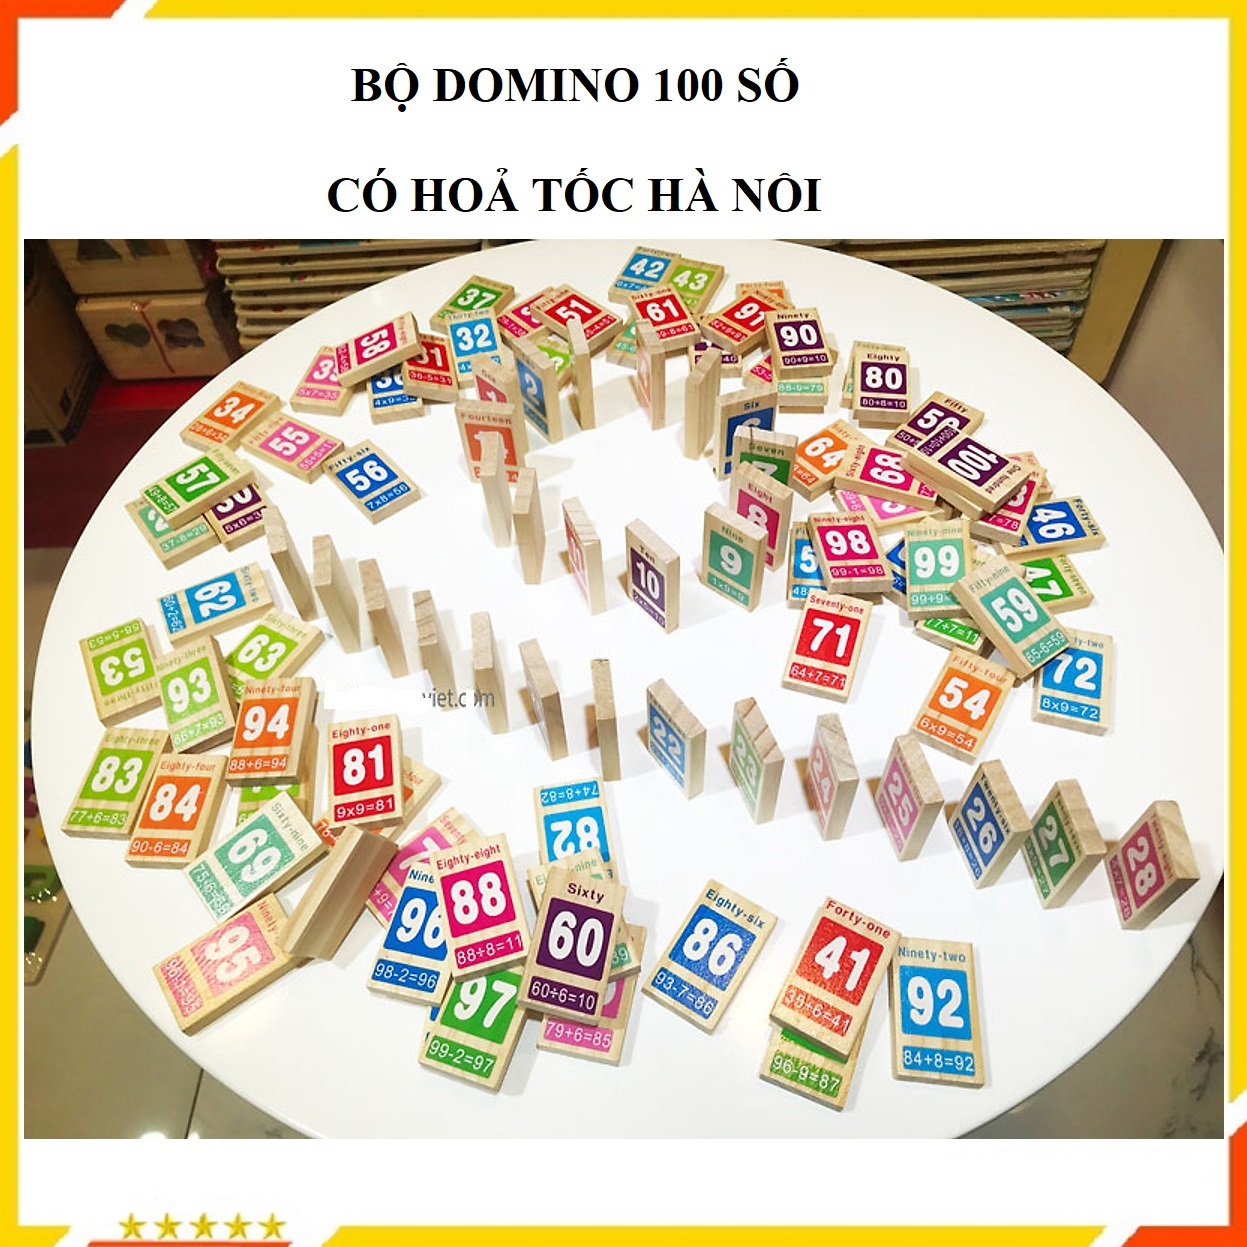 Đồ chơi domino gỗ Bộ domino số 100 quân